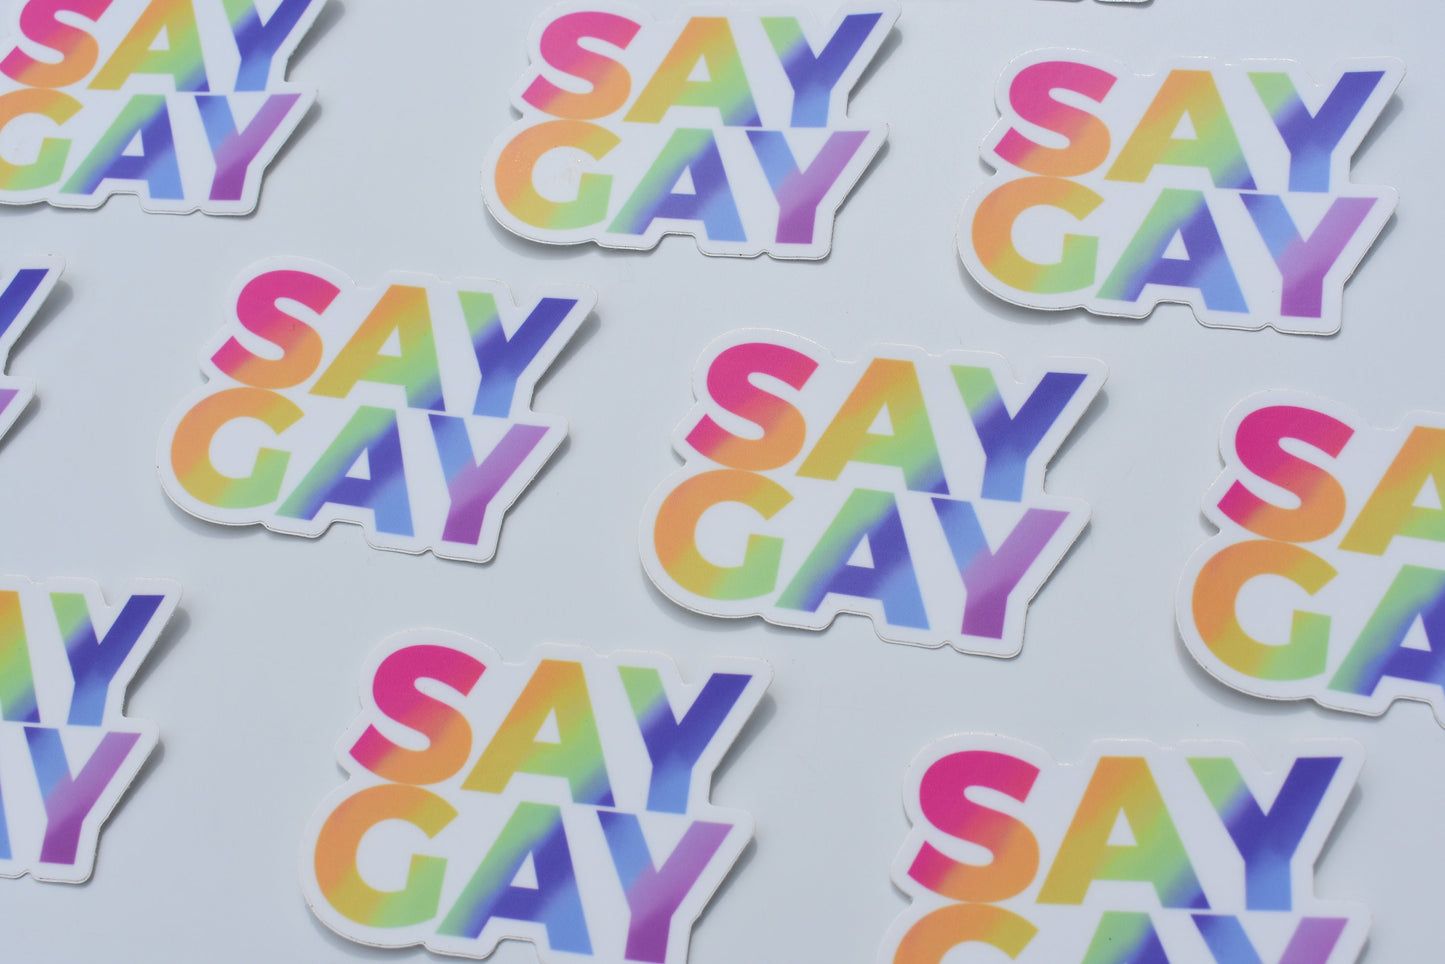 Say Gay Sticker, Pride Sticker, Vinyl Laptop Waterbottle Sticker, LGBTQ Pride Sticker, Rainbow Sticker, Gay Pride